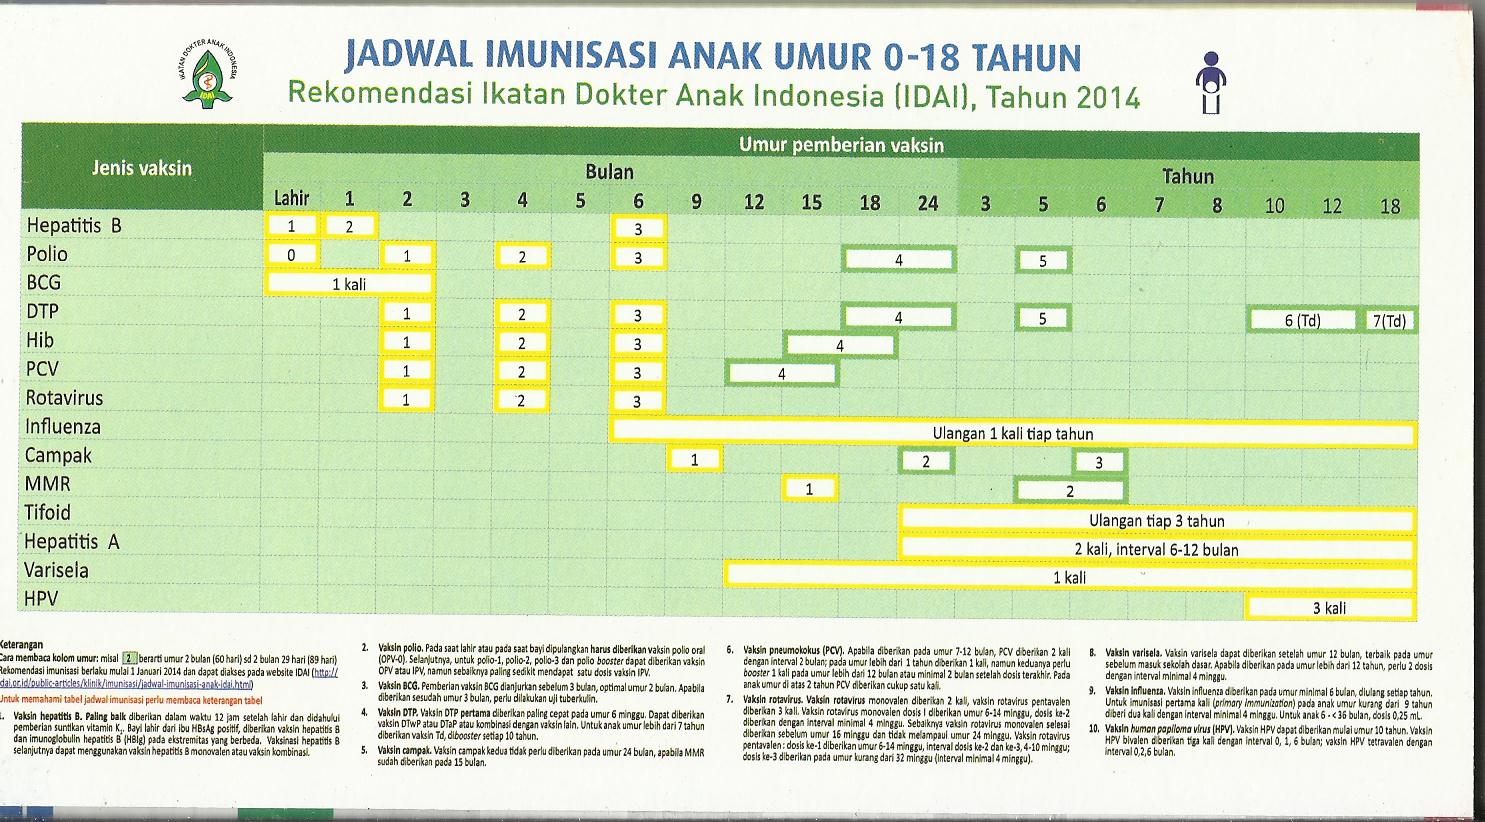 JADWAL IMUNISASI IDAI 2013 PDF